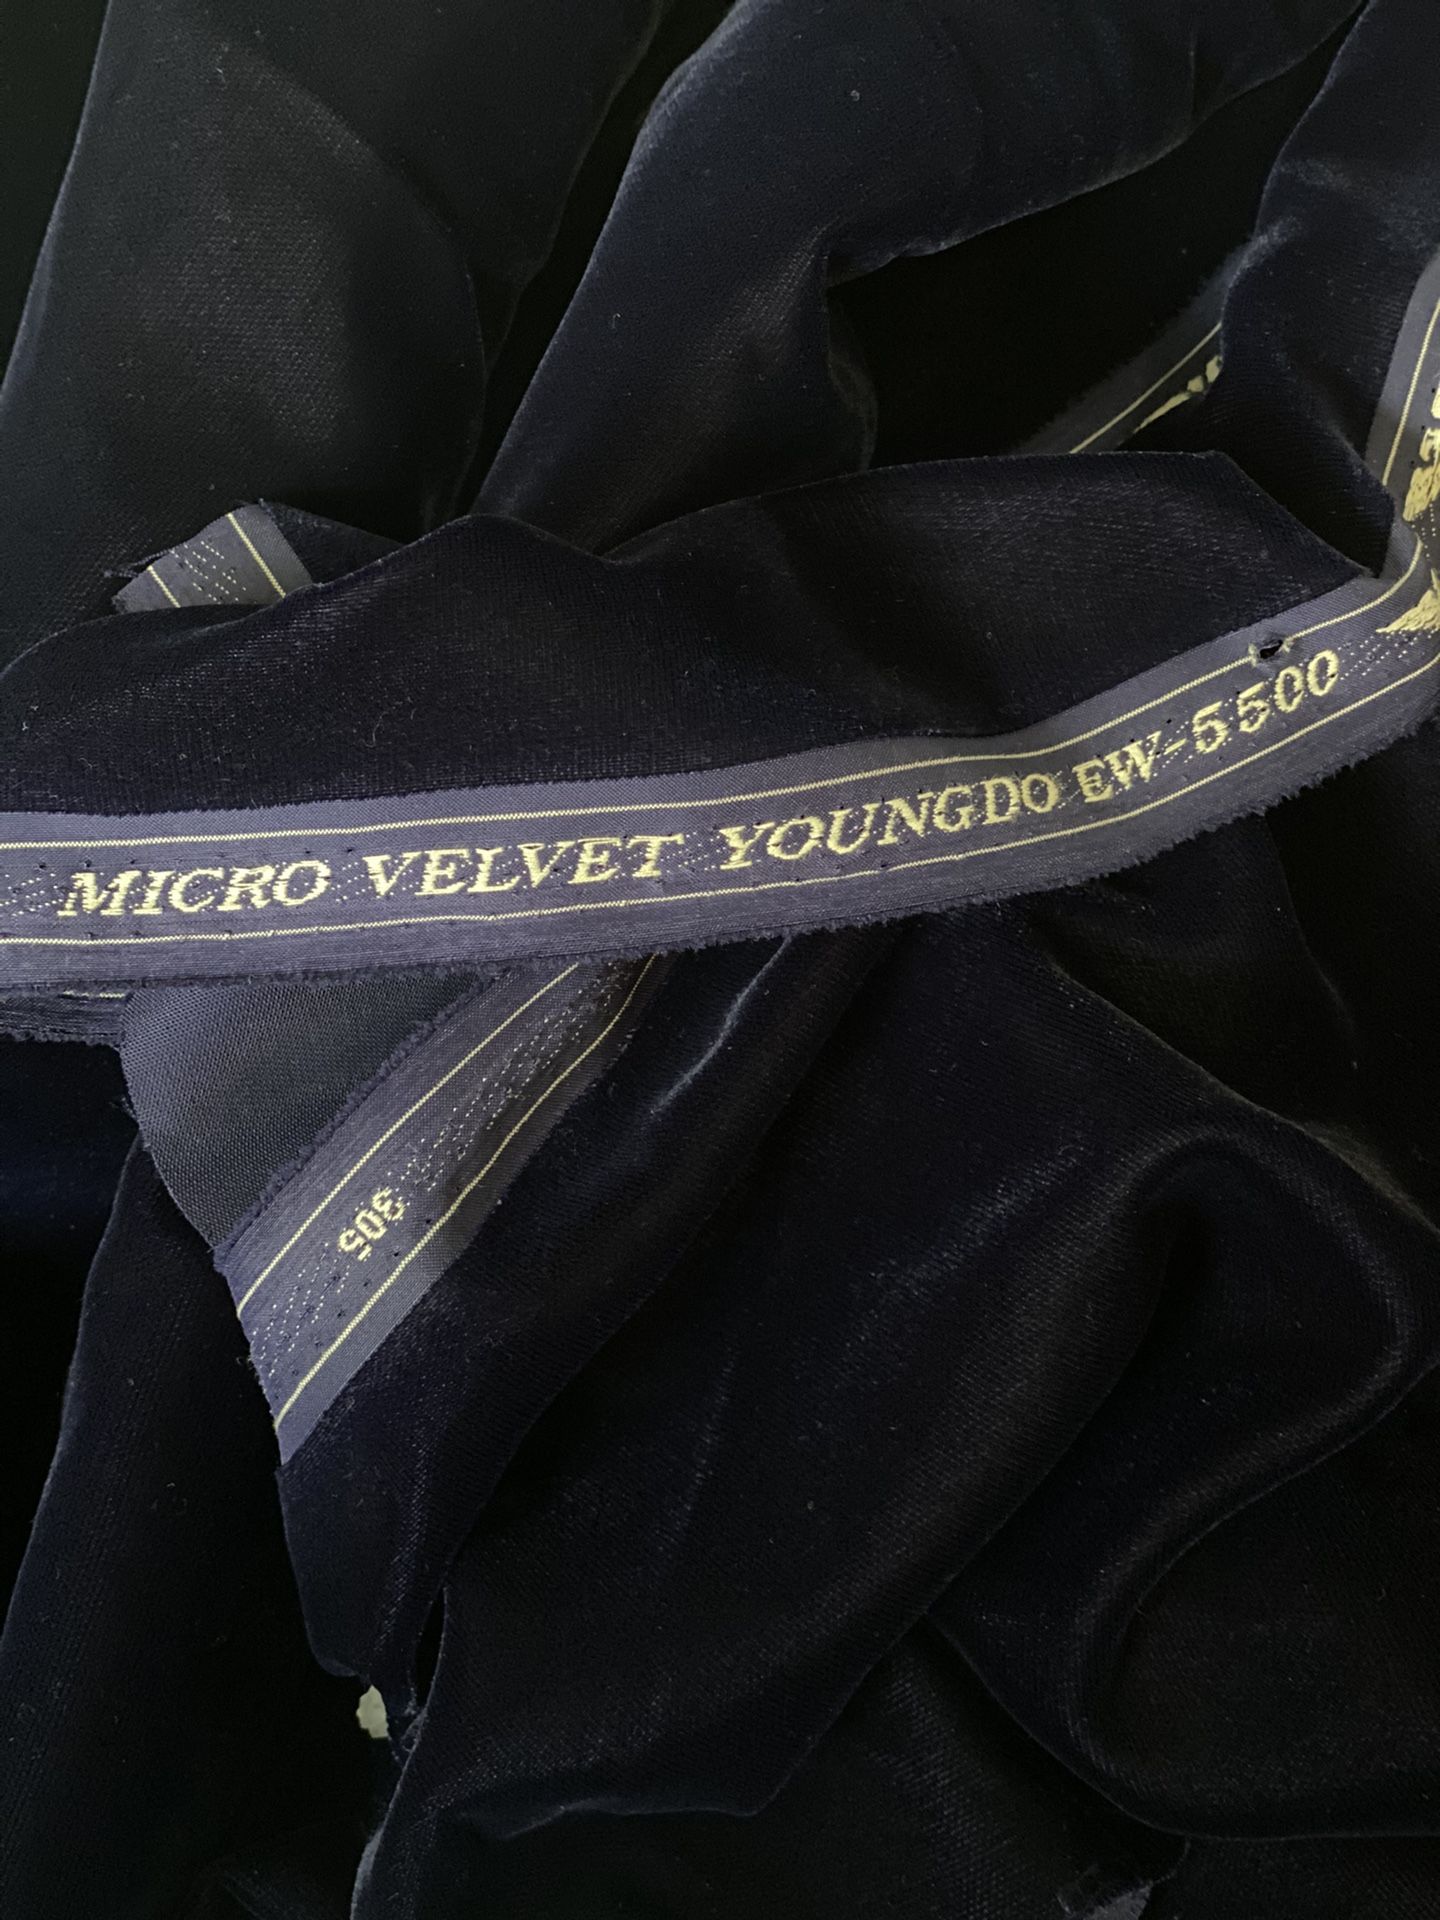 Micro Velvet Dark / Navy Blue